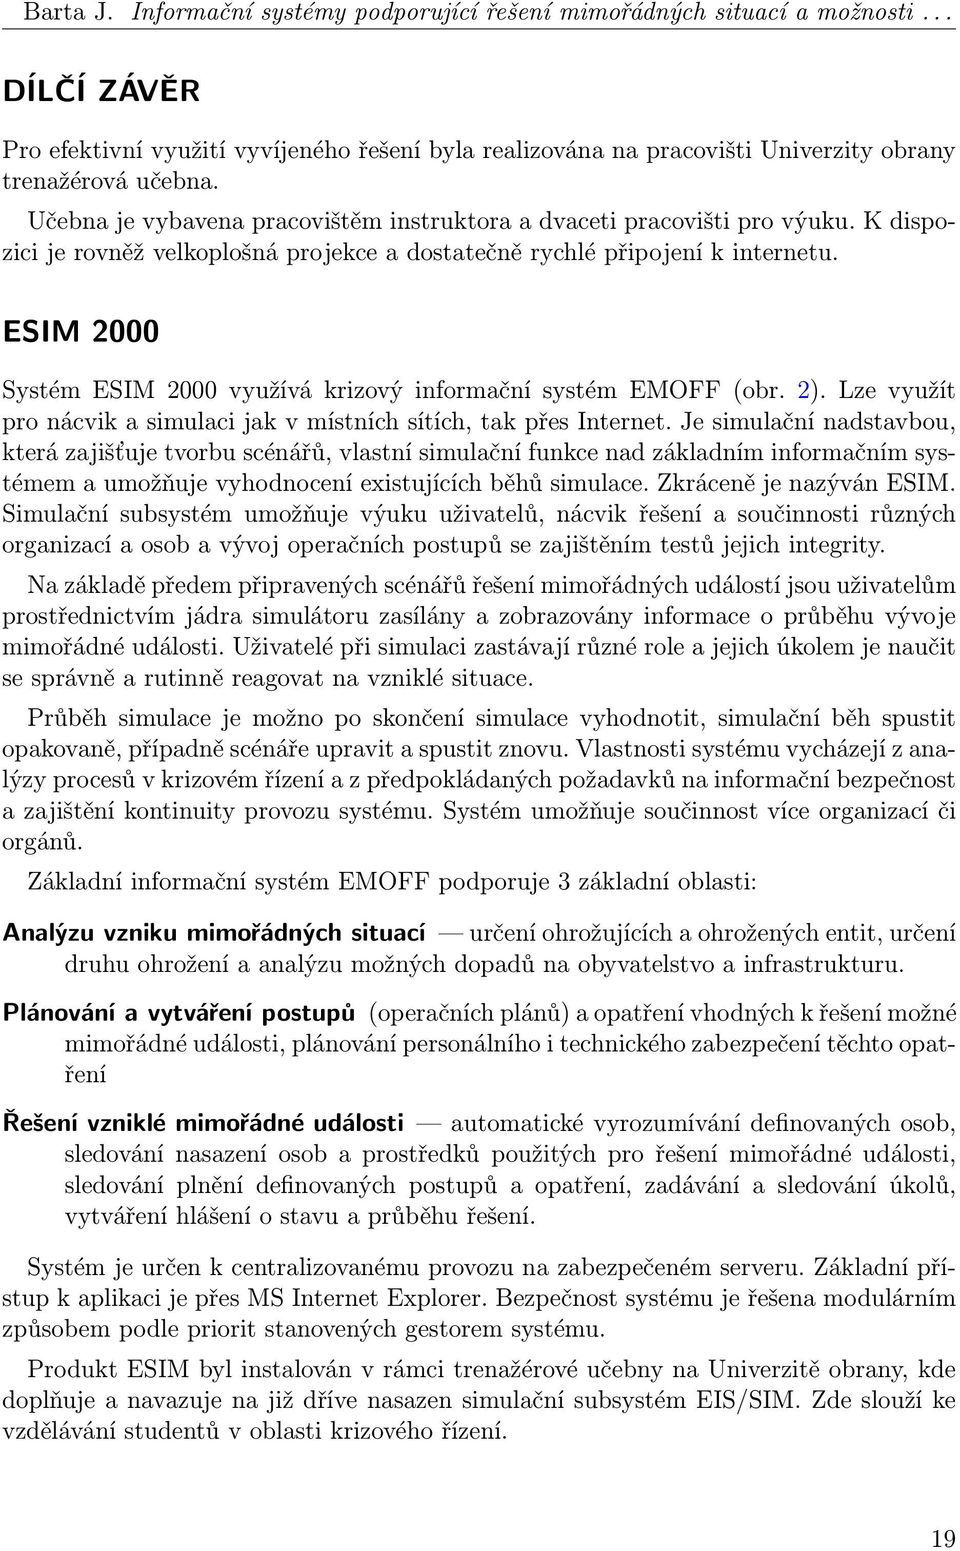 ESIM 2000 Systém ESIM 2000 využívá krizový informační systém EMOFF (obr. 2). Lze využít pro nácvik a simulaci jak v místních sítích, tak přes Internet.